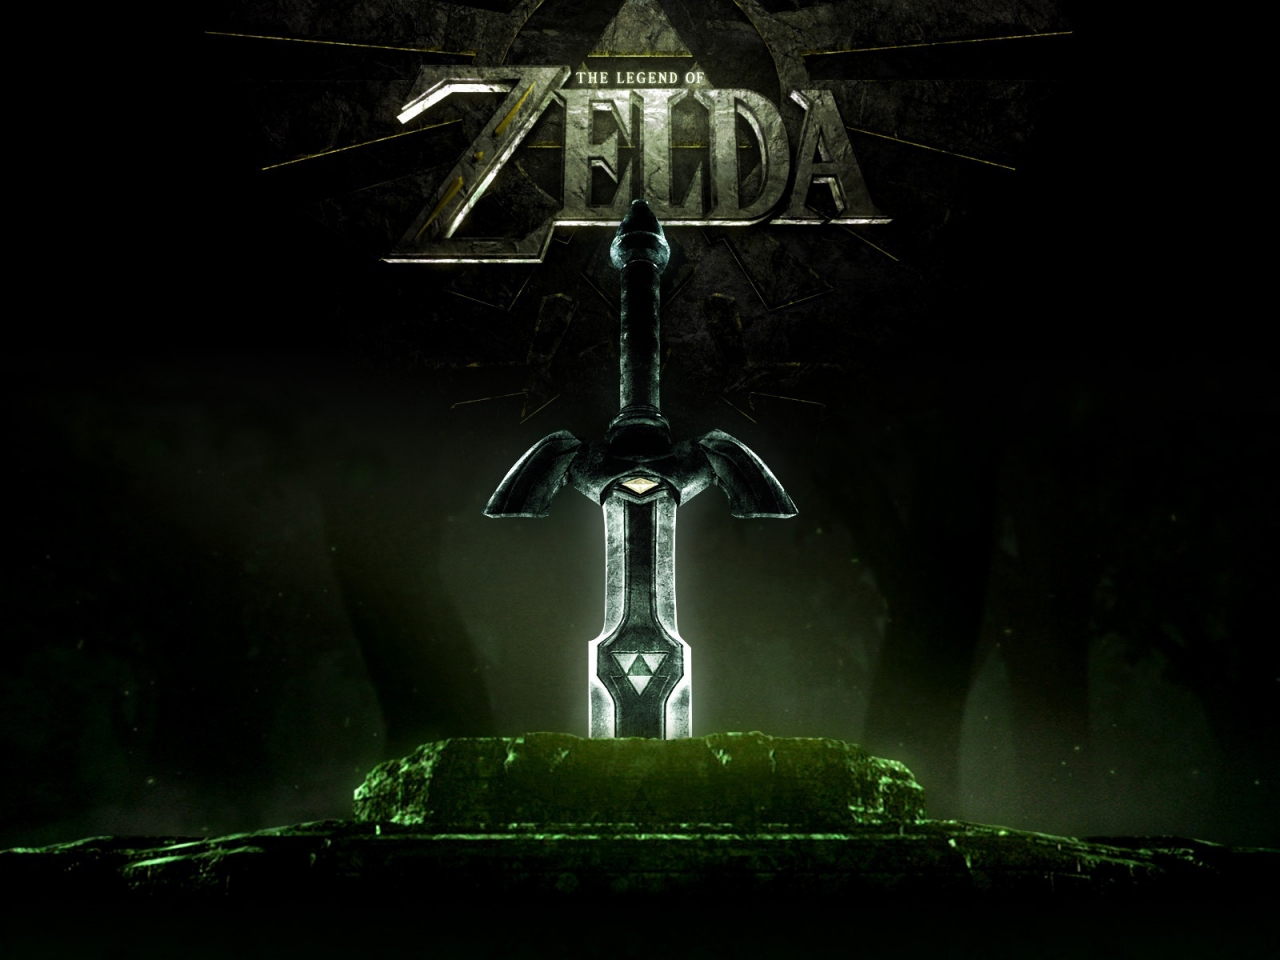 Legend of Zelda for 1280 x 960 resolution